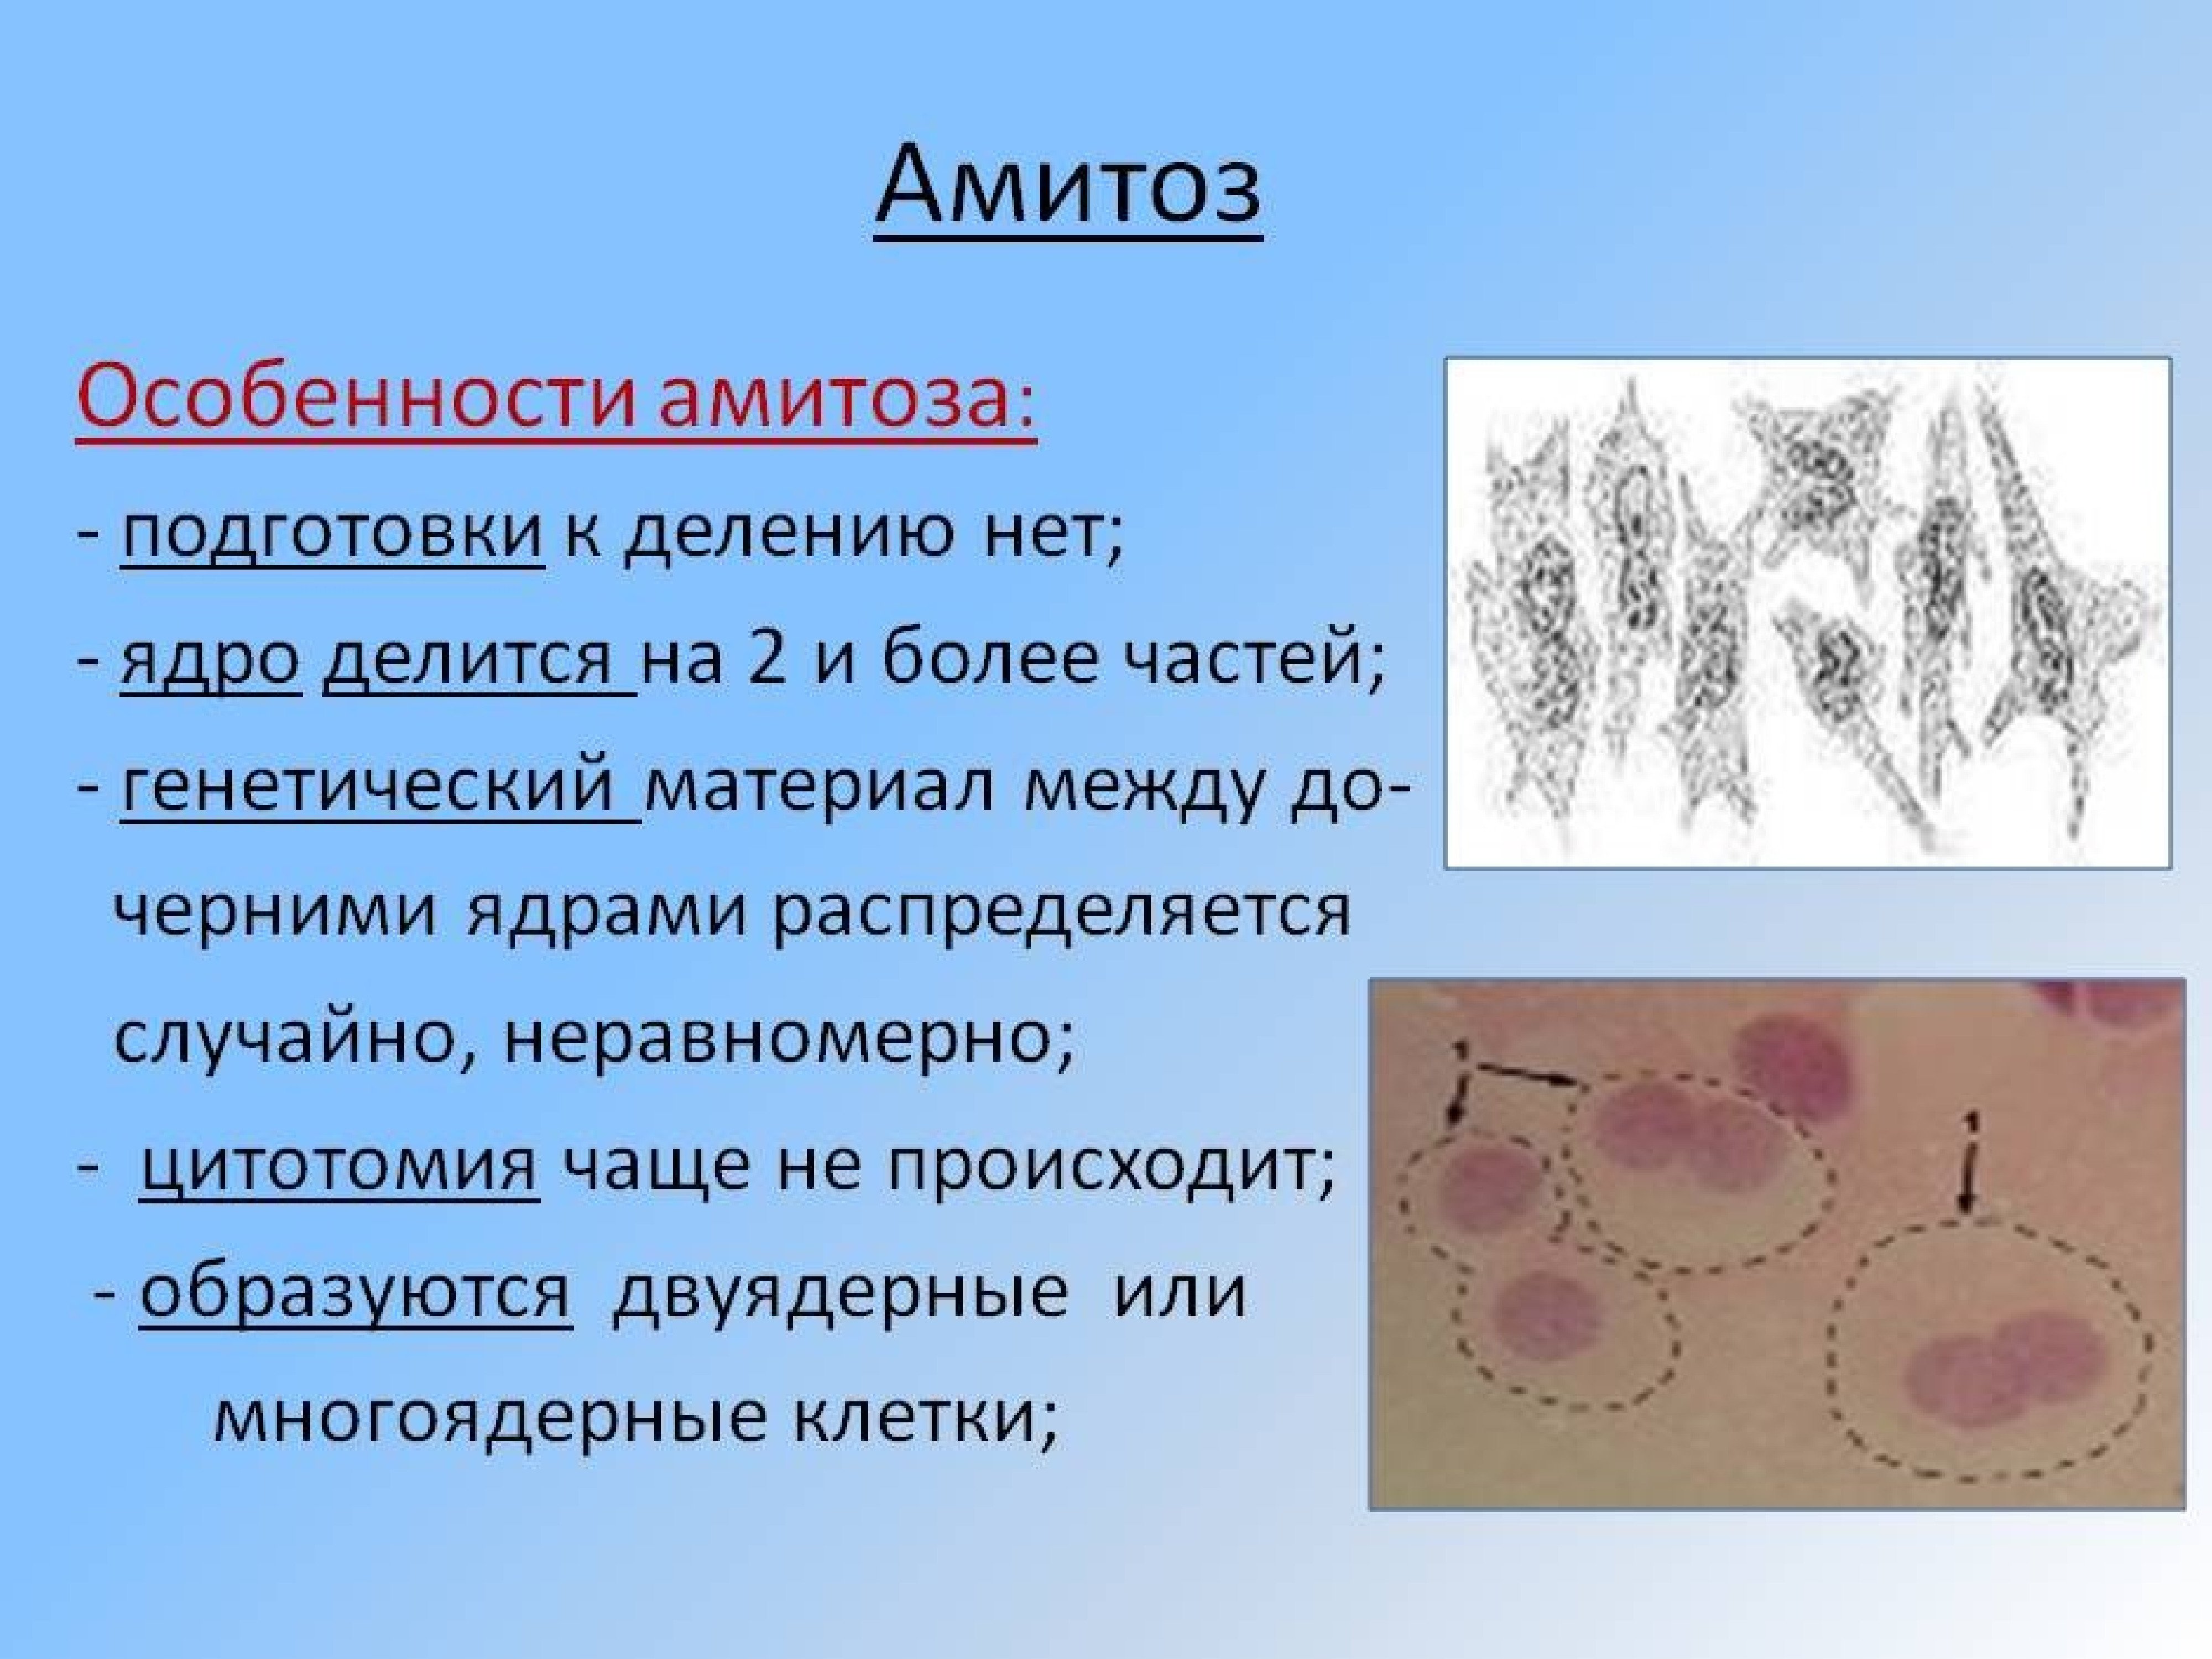 Способы деления клеток амитоз